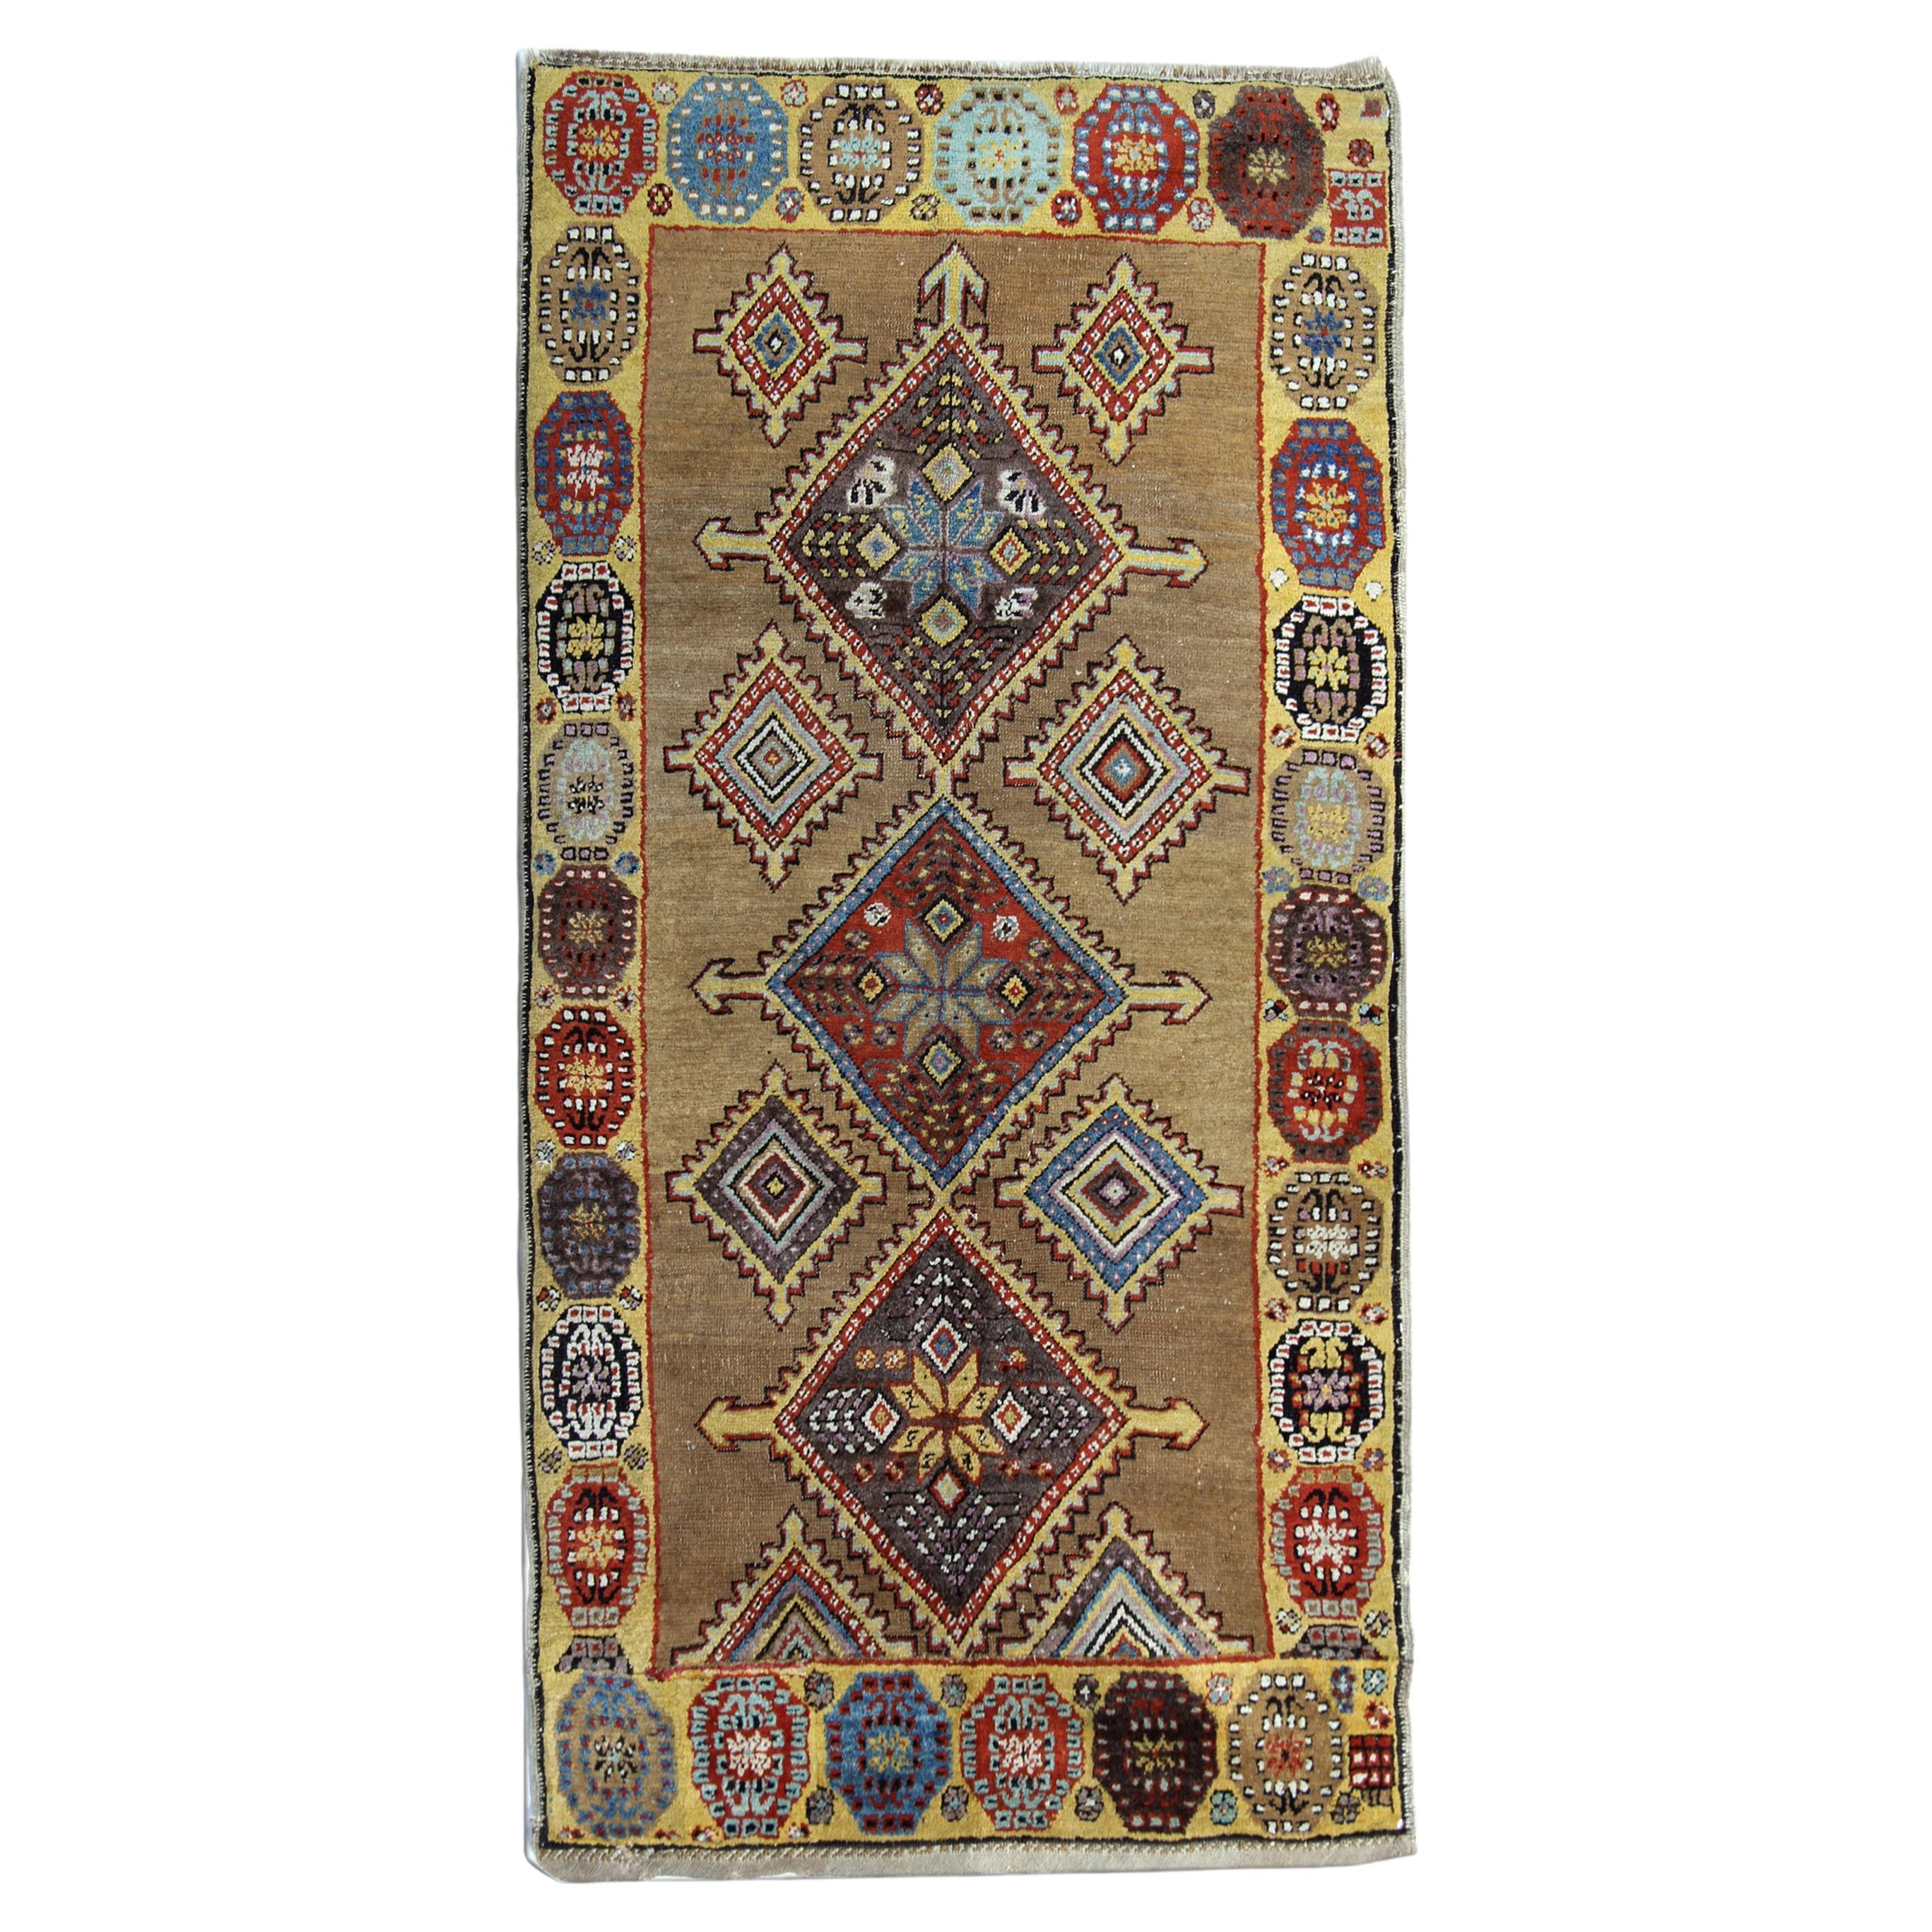 Gold handgefertigter orientalischer geometrischer Teppich, Stammeskunst, Wohnzimmerteppich